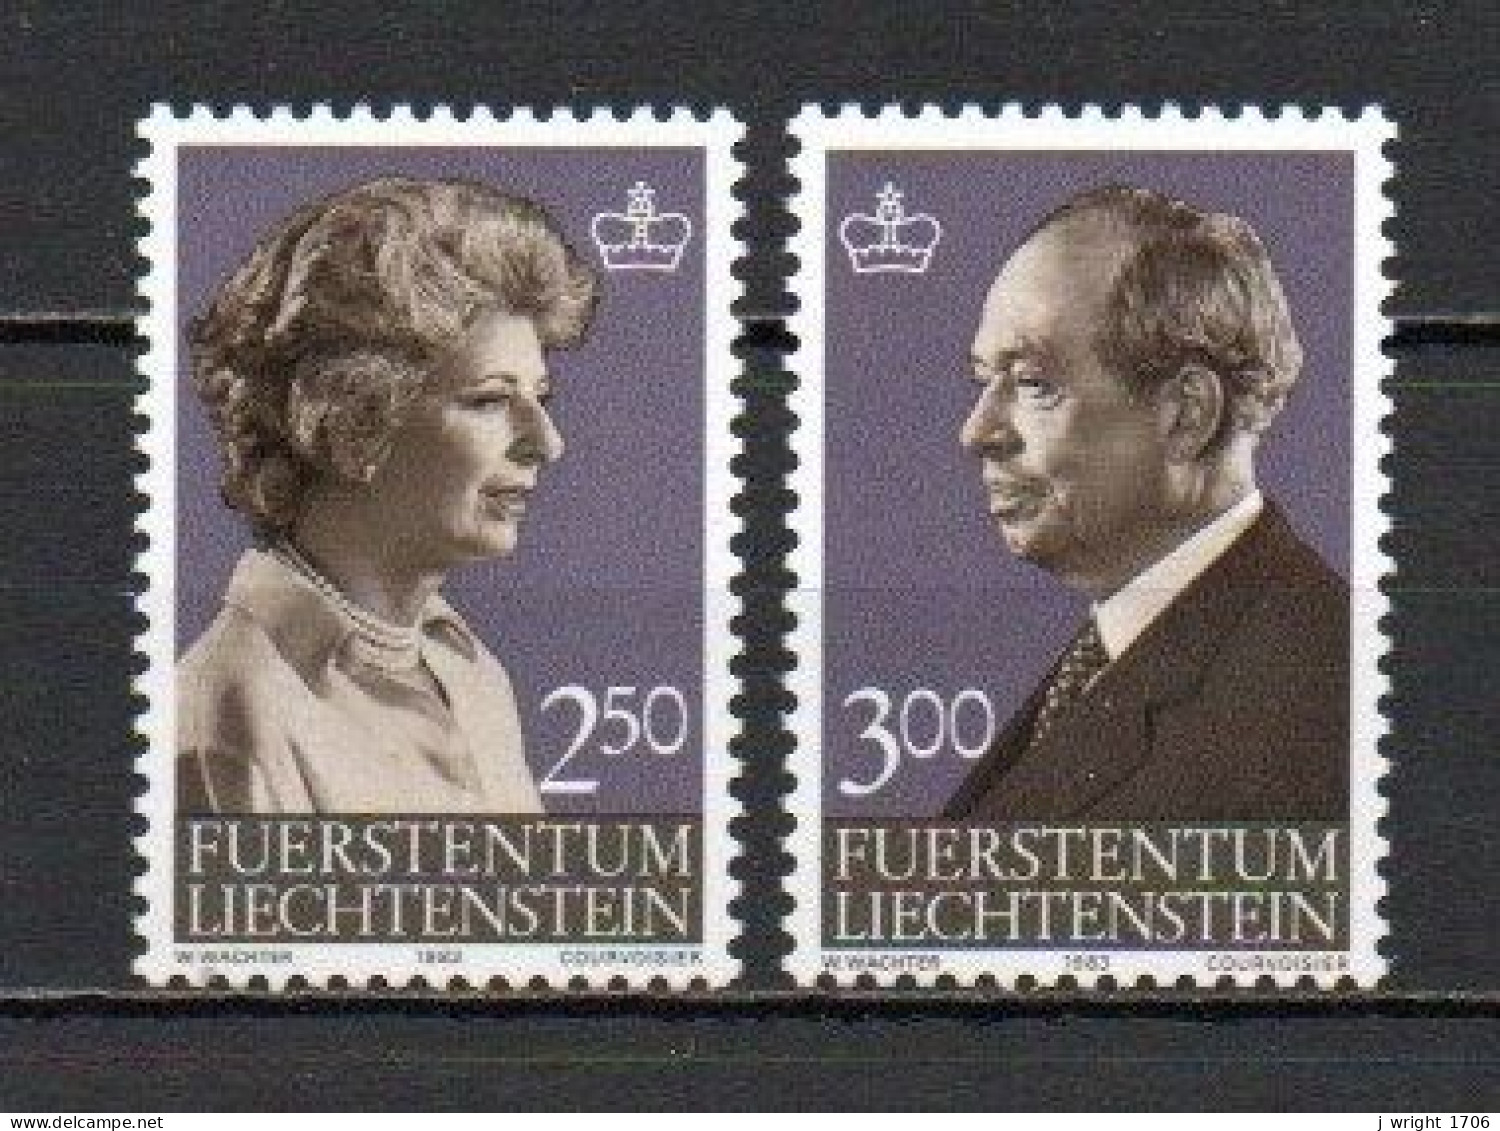 Liechtenstein, 1983, Princess Gina& Prince Franz Josef II, Set, MNH - Unused Stamps